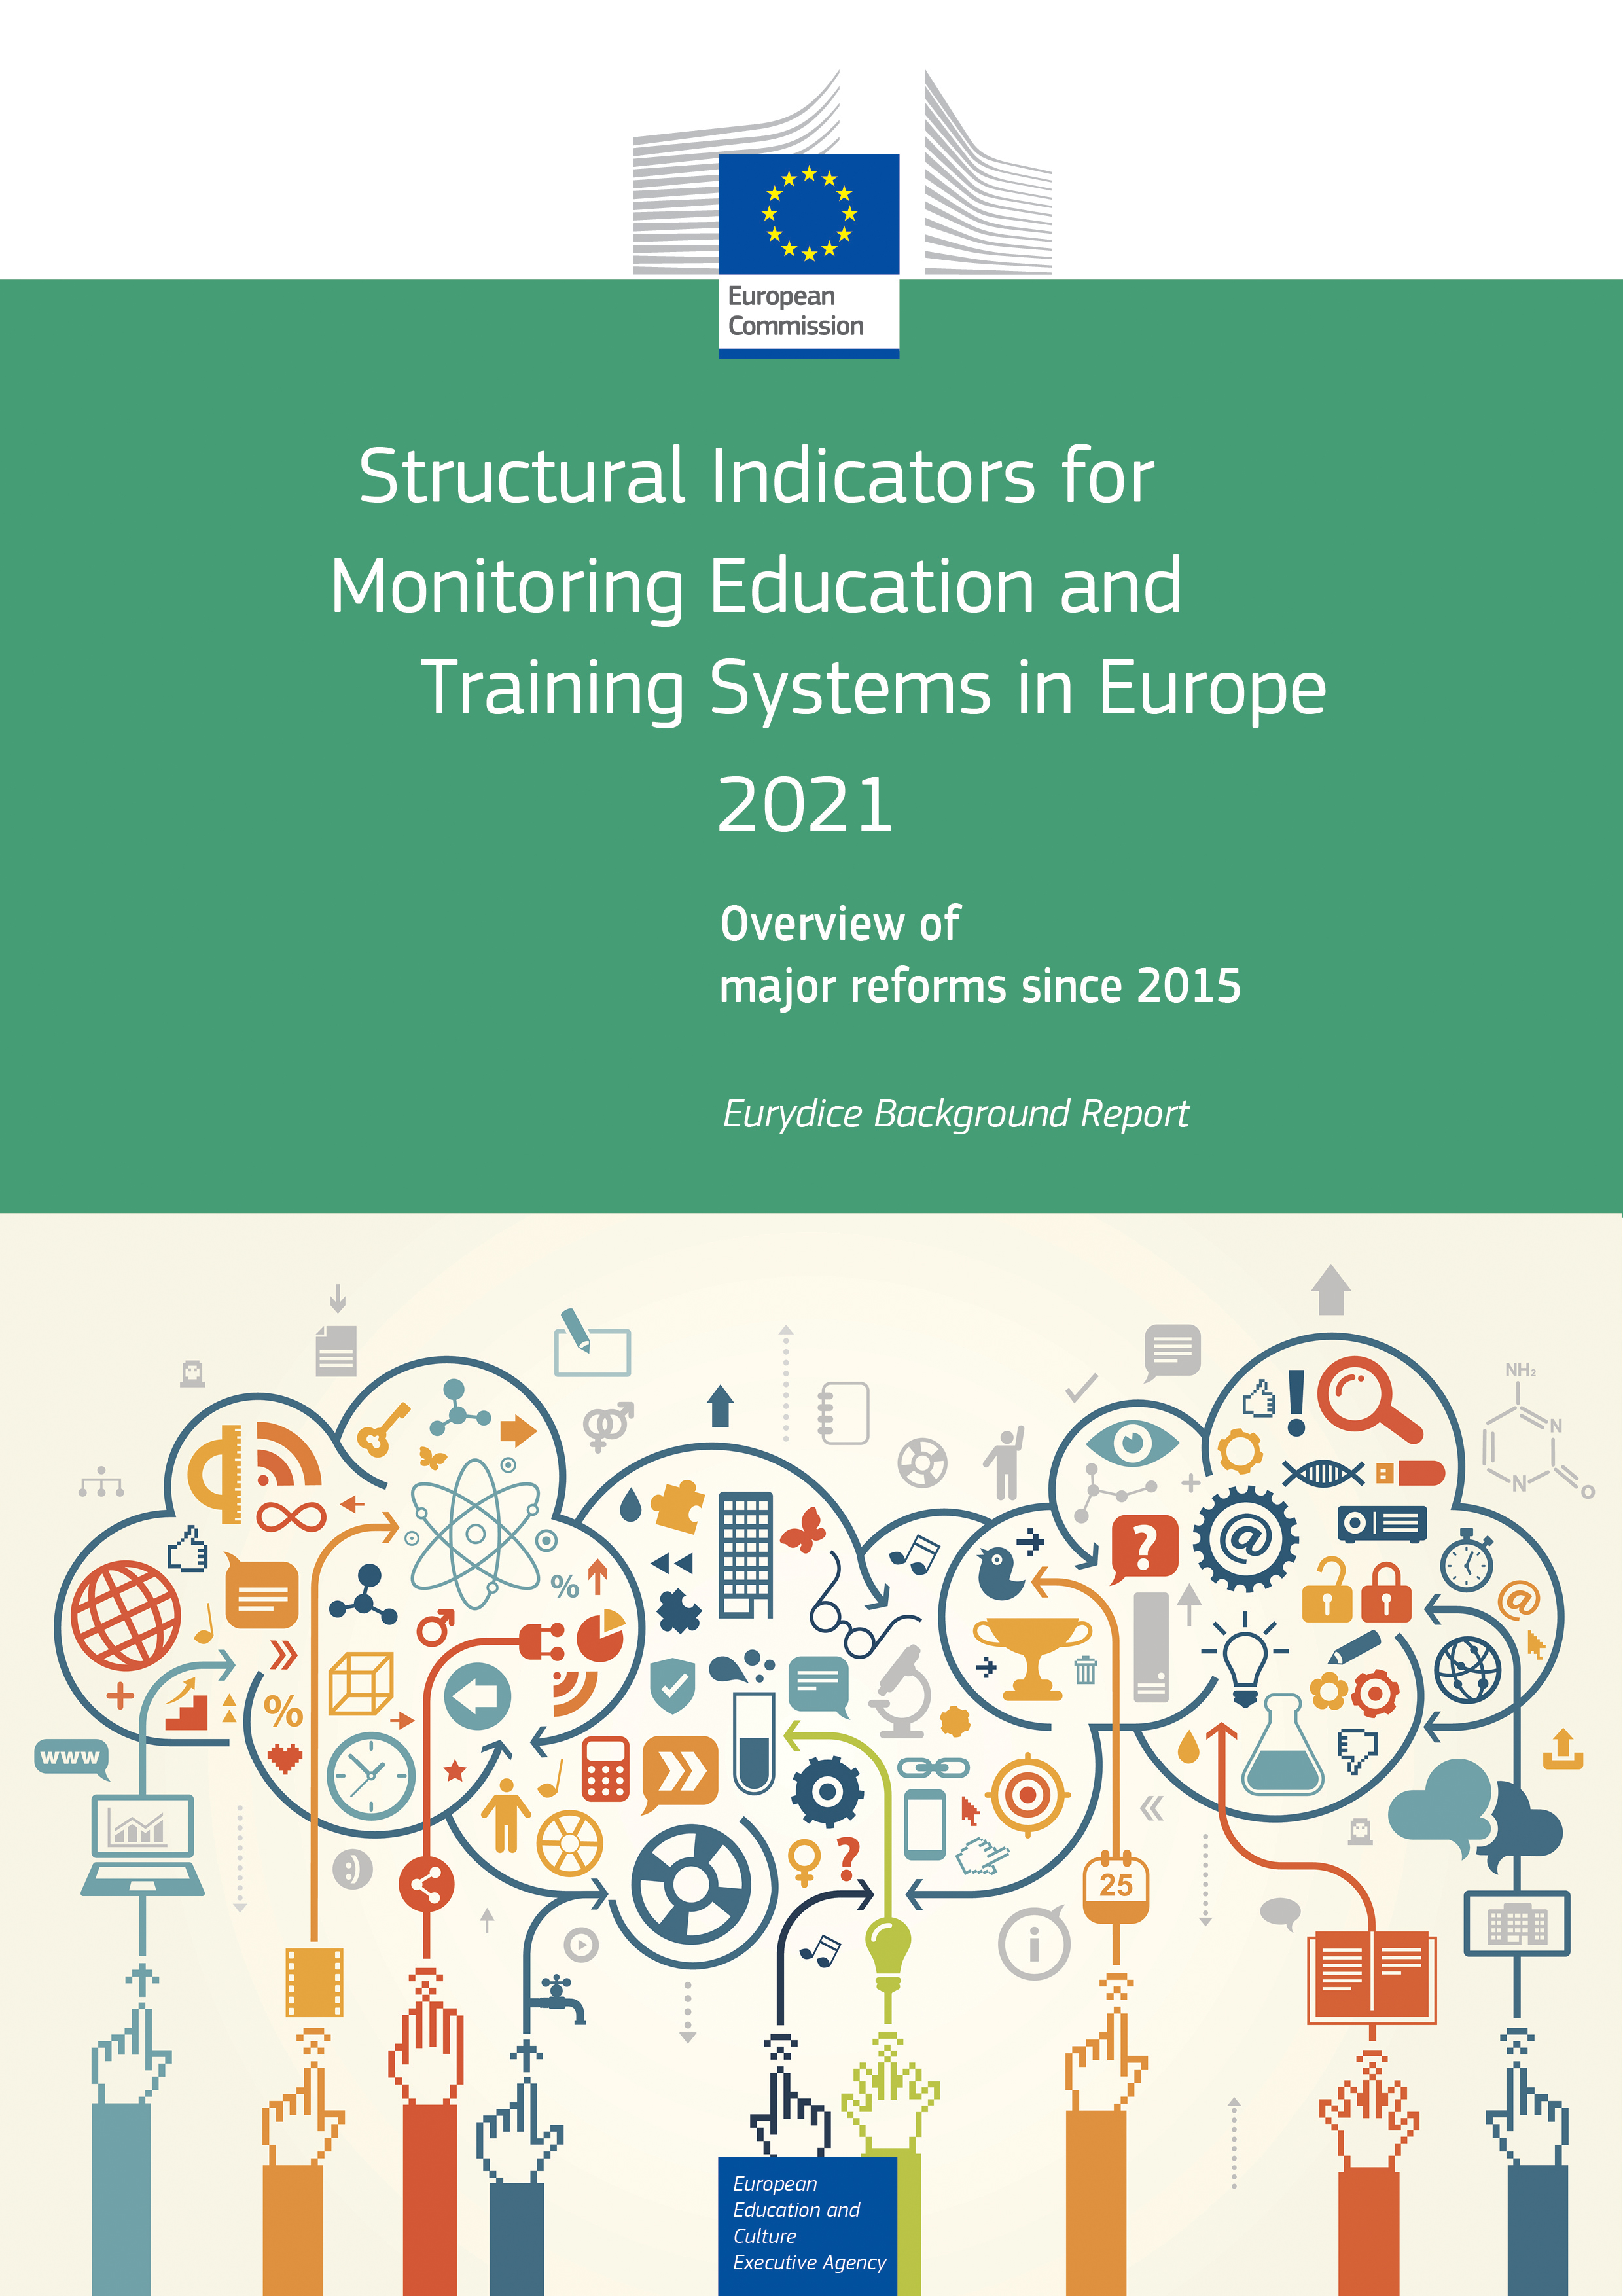 Strukturni pokazatelji za praćenje sustava obrazovanja i osposobljavanja u Europi (2021.) - Slika 1